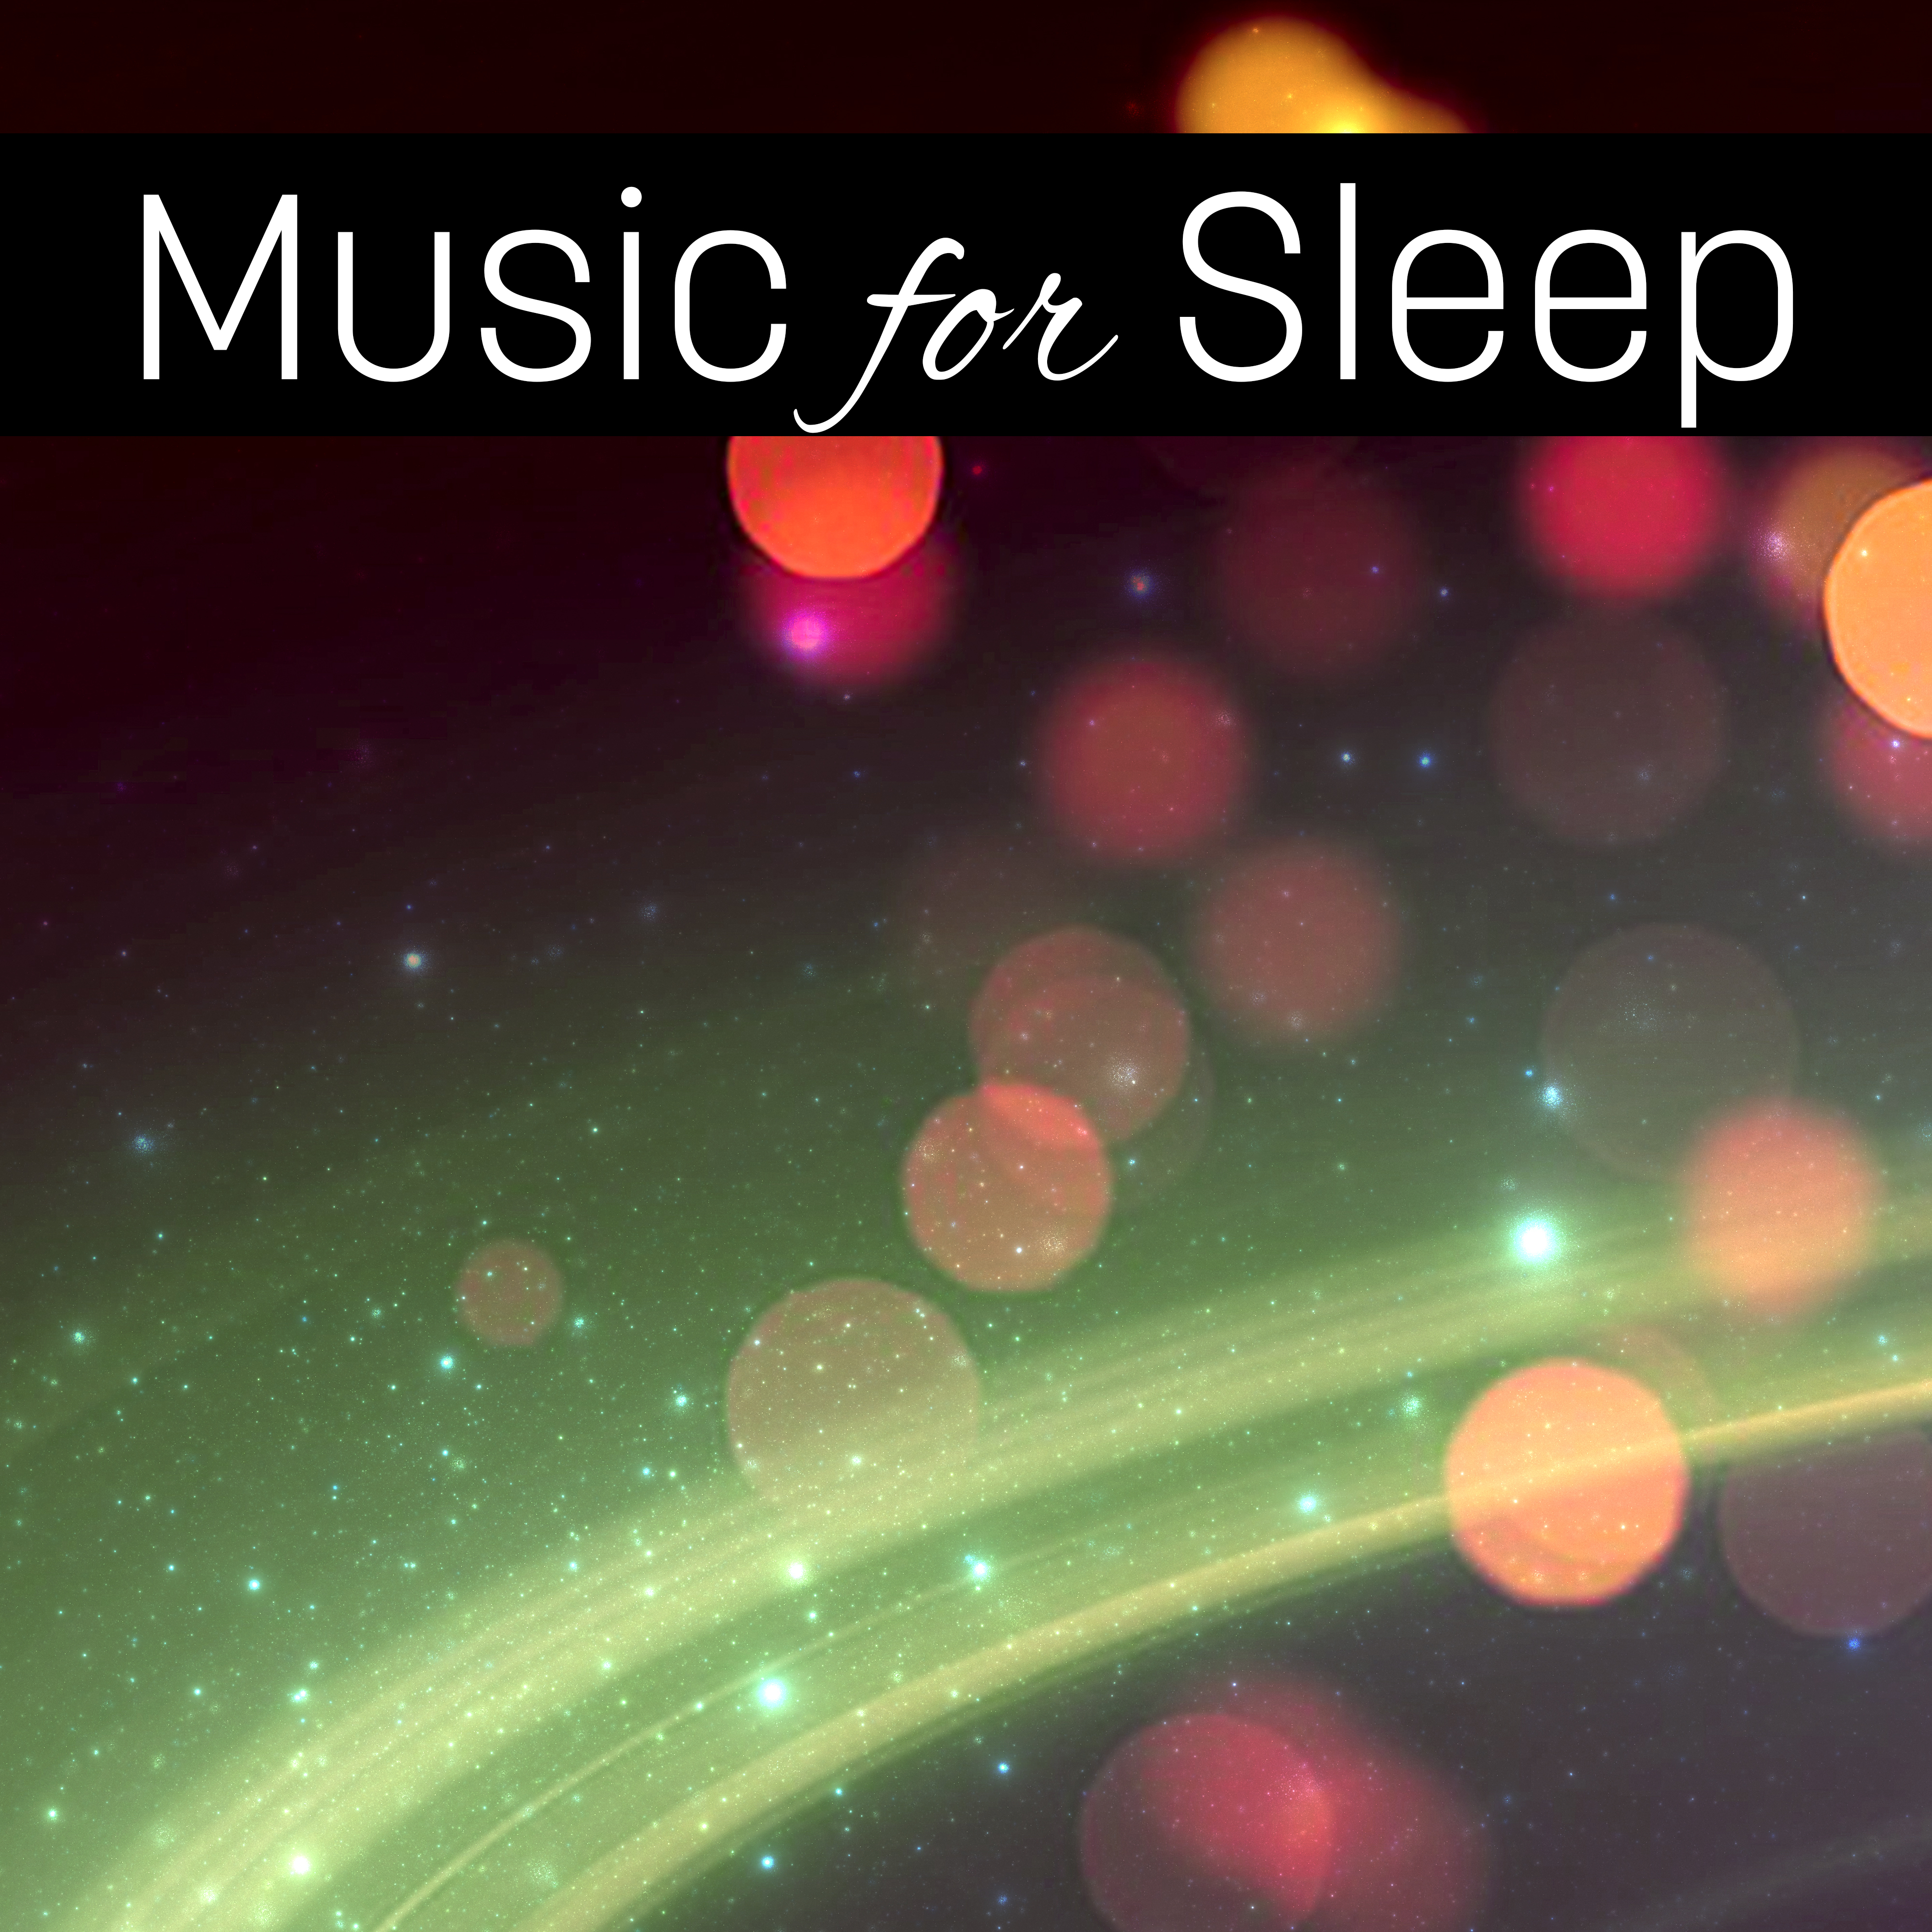 Bedtime Music for Sleep